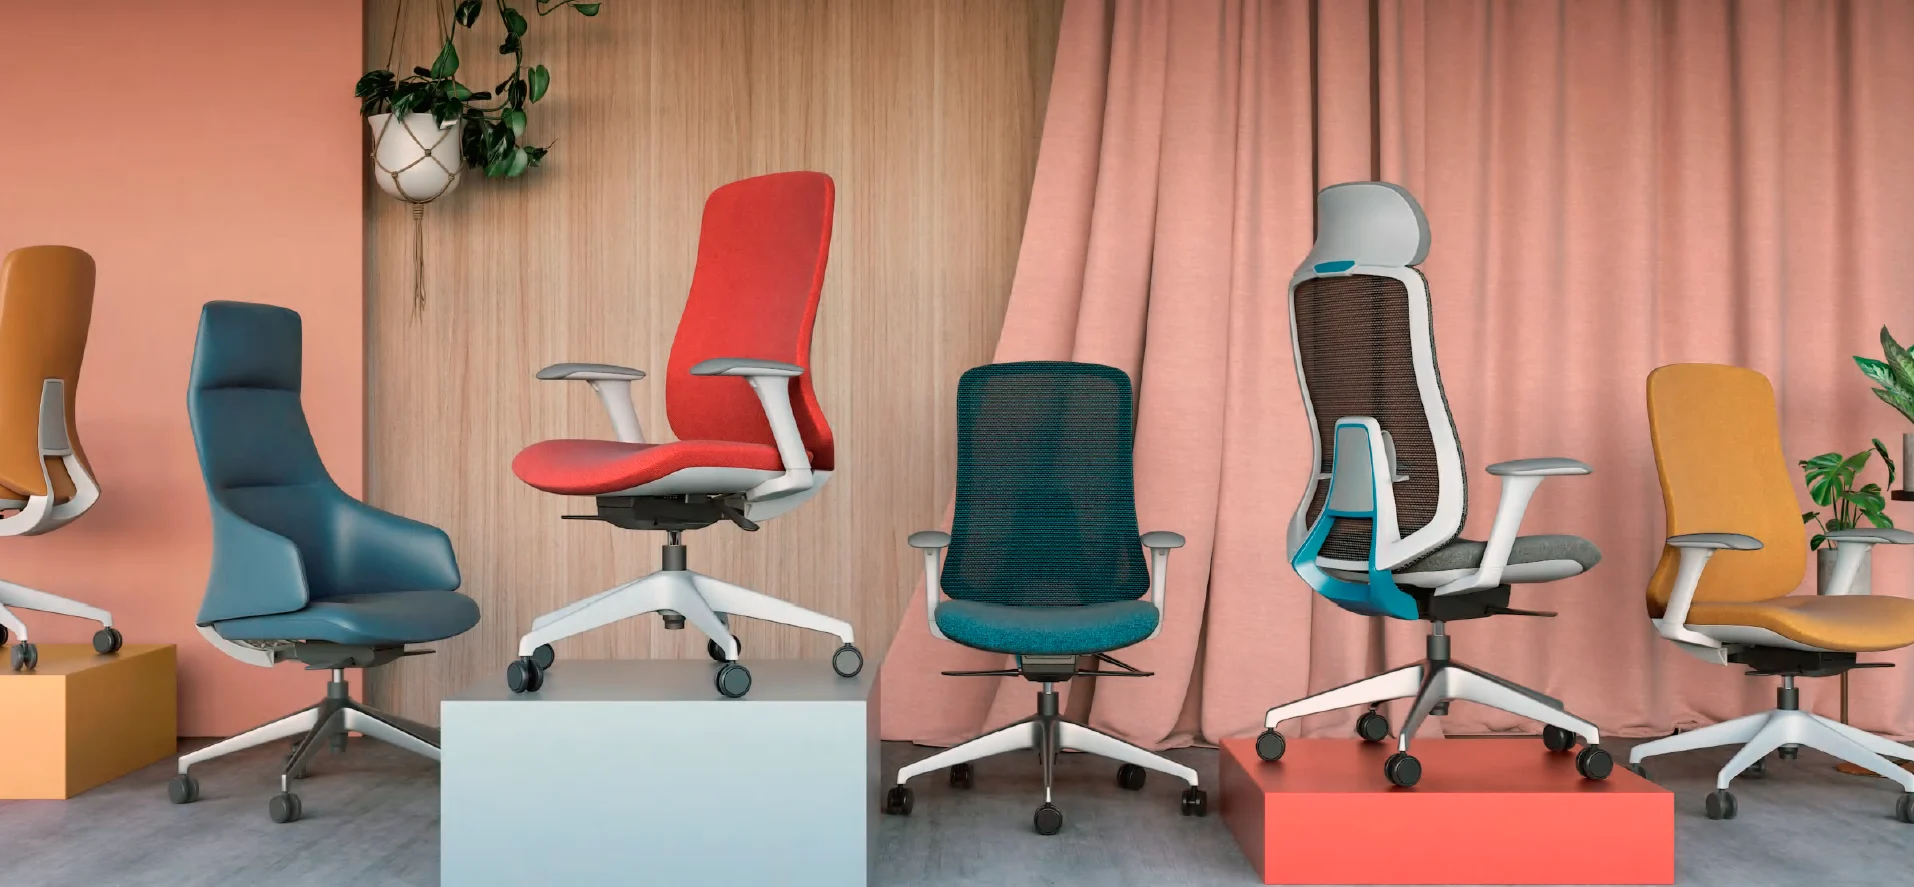 Selección de sillas ergonómicas de distintos modelos y colores